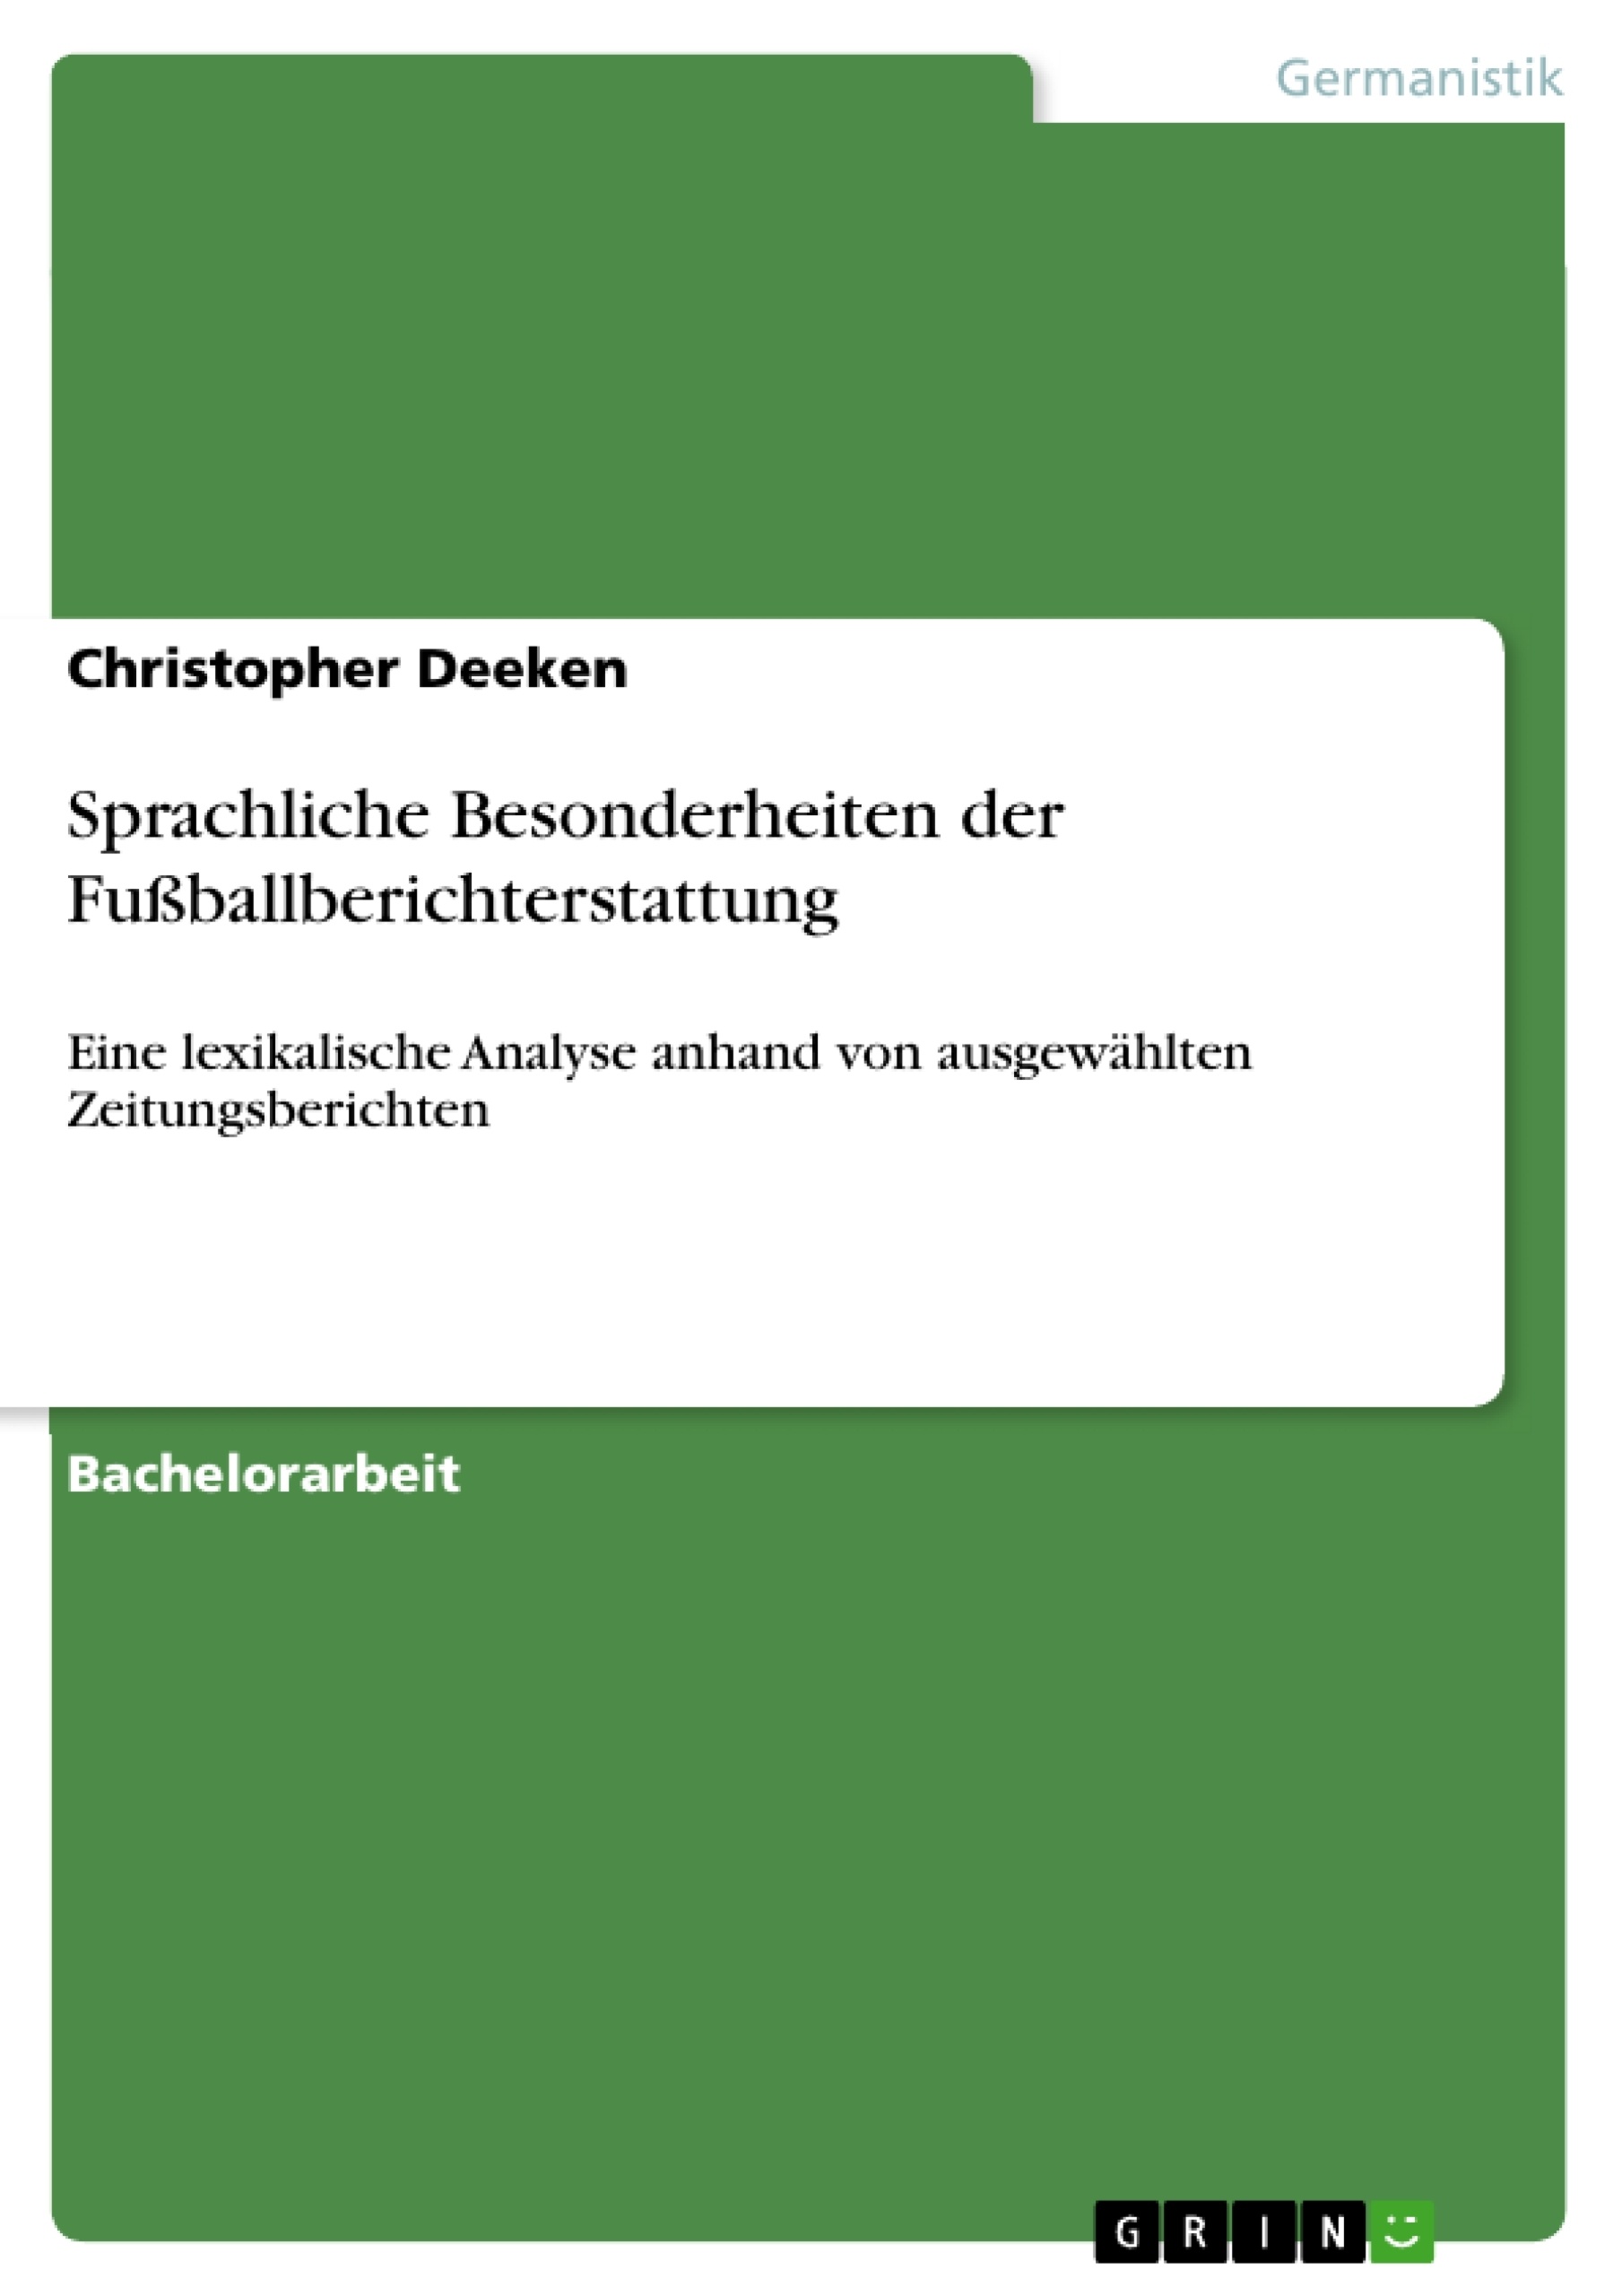 Title: Sprachliche Besonderheiten der Fußballberichterstattung